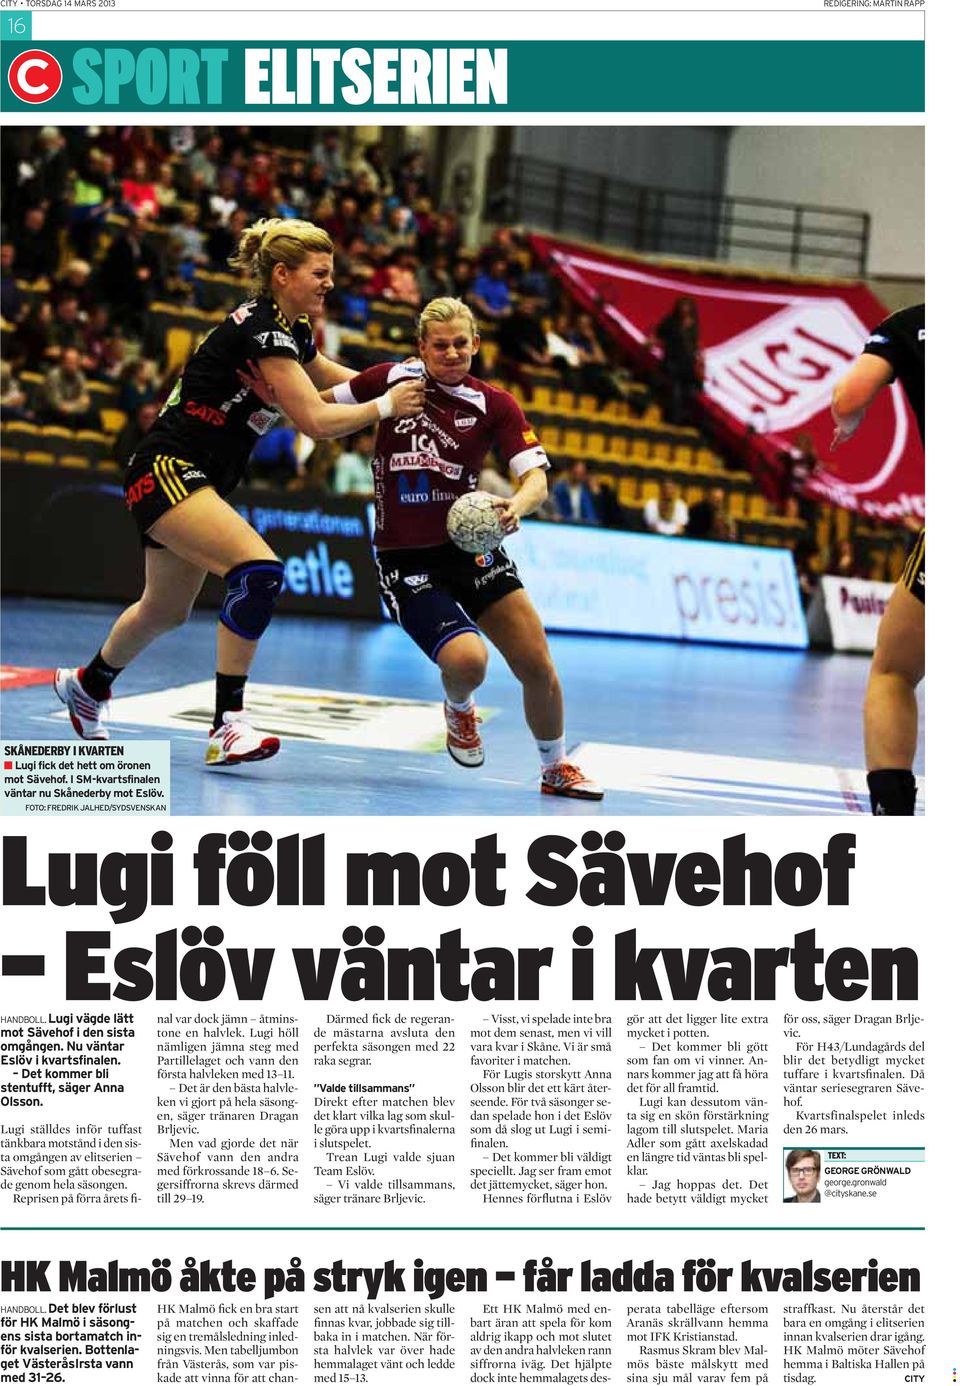 Det kommer bli stentufft, säger Anna Olsson. Lugi ställdes inför tuffast tänkbara motstånd i den sista omgången av elitserien Sävehof som gått obesegrade genom hela säsongen.